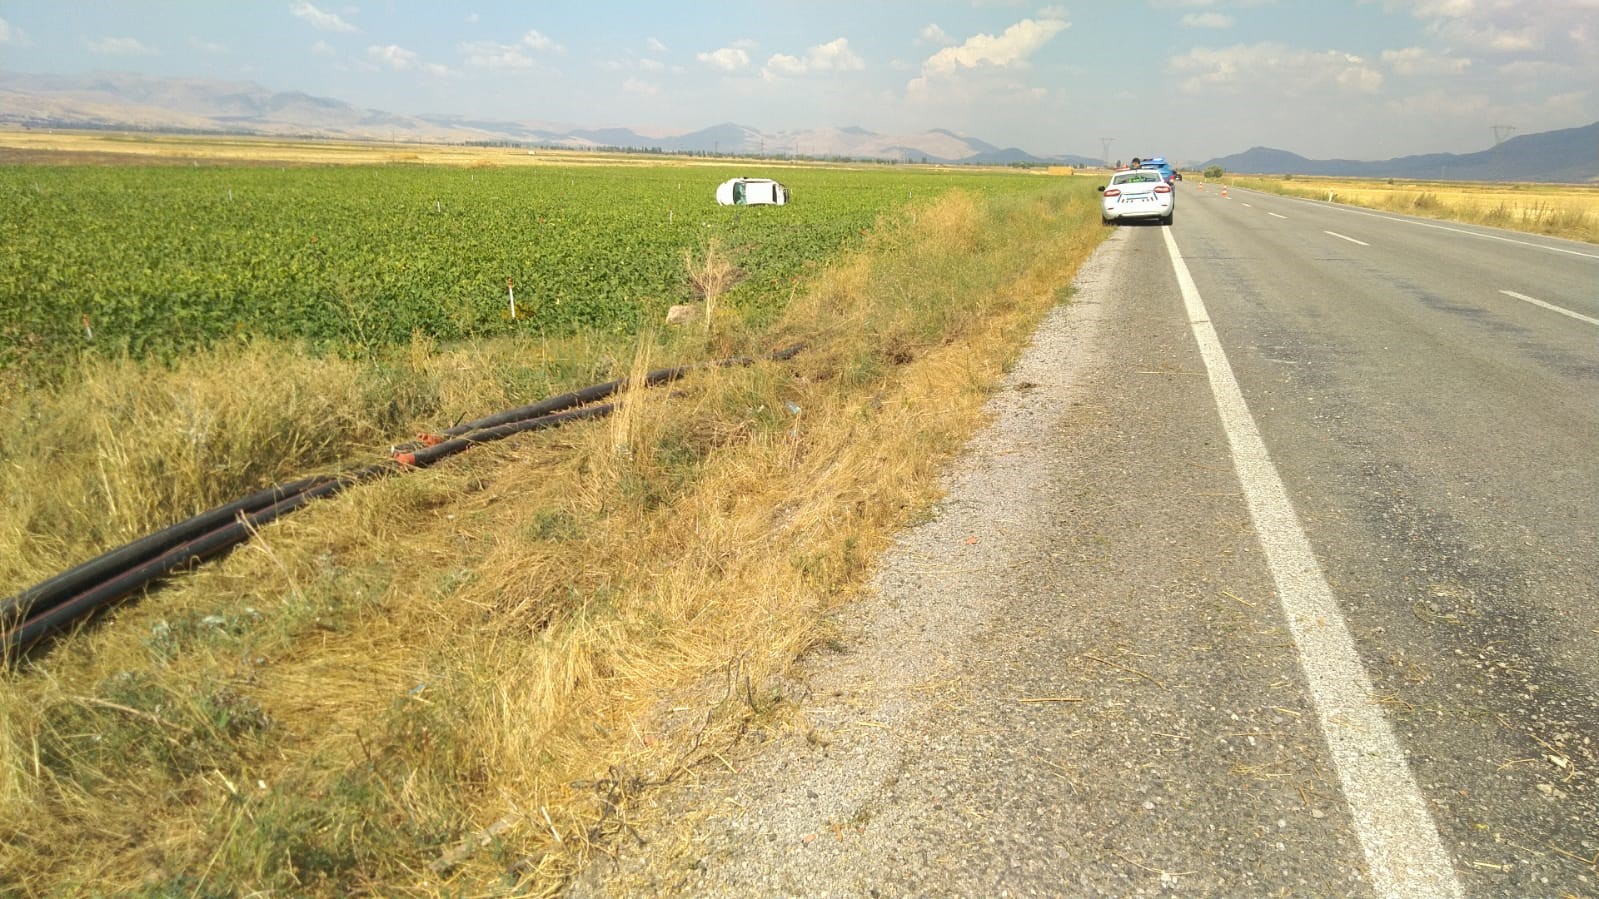 Takla atıp tarım arazisine giren otomobilde 2 kişi yaralandı